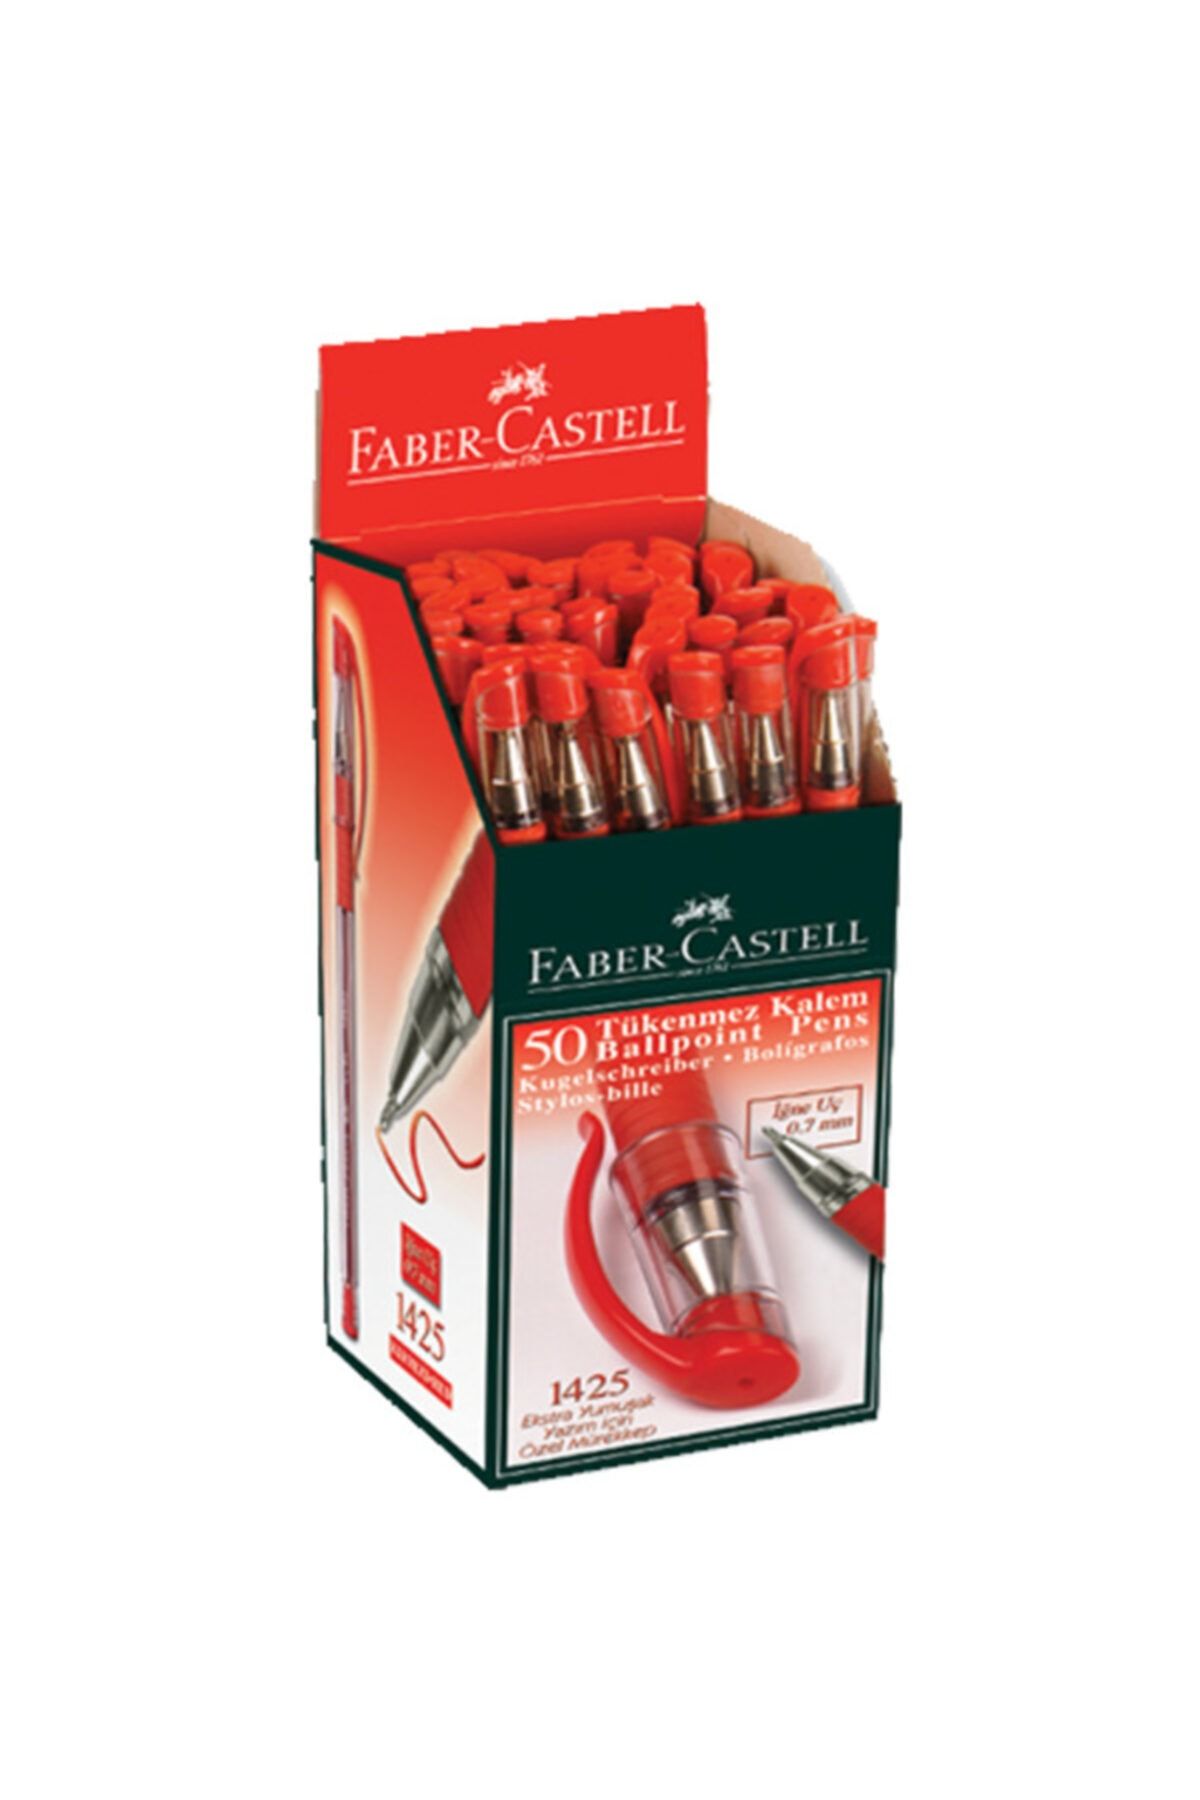 Faber Castell Faber-castell 1425 Iğne Uç Tükenmez Kalem Kırmızı 50 Li 5207142521000 (1 Paket 50 Adet)